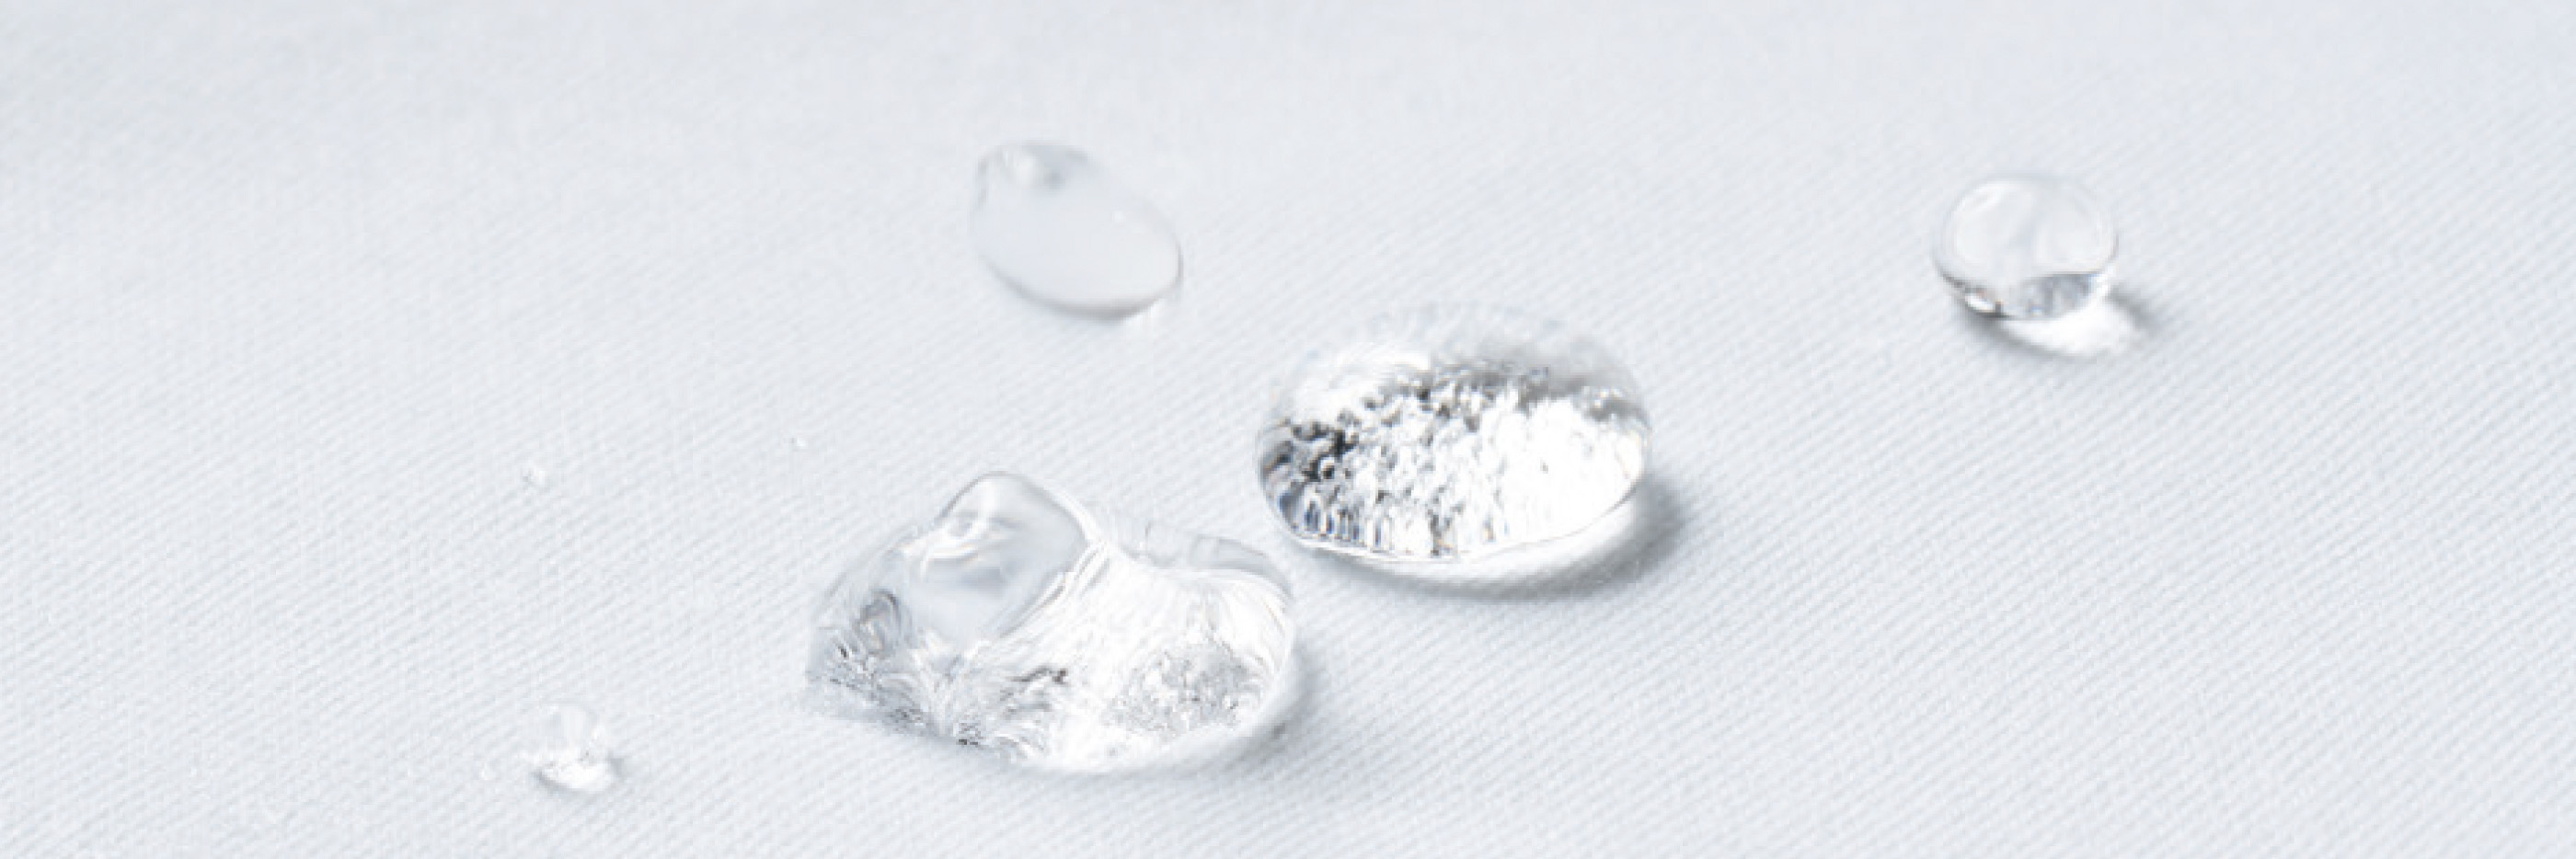 Waterdruppels liggen op een witte stof met hydrofobe eigenschappen | mey®